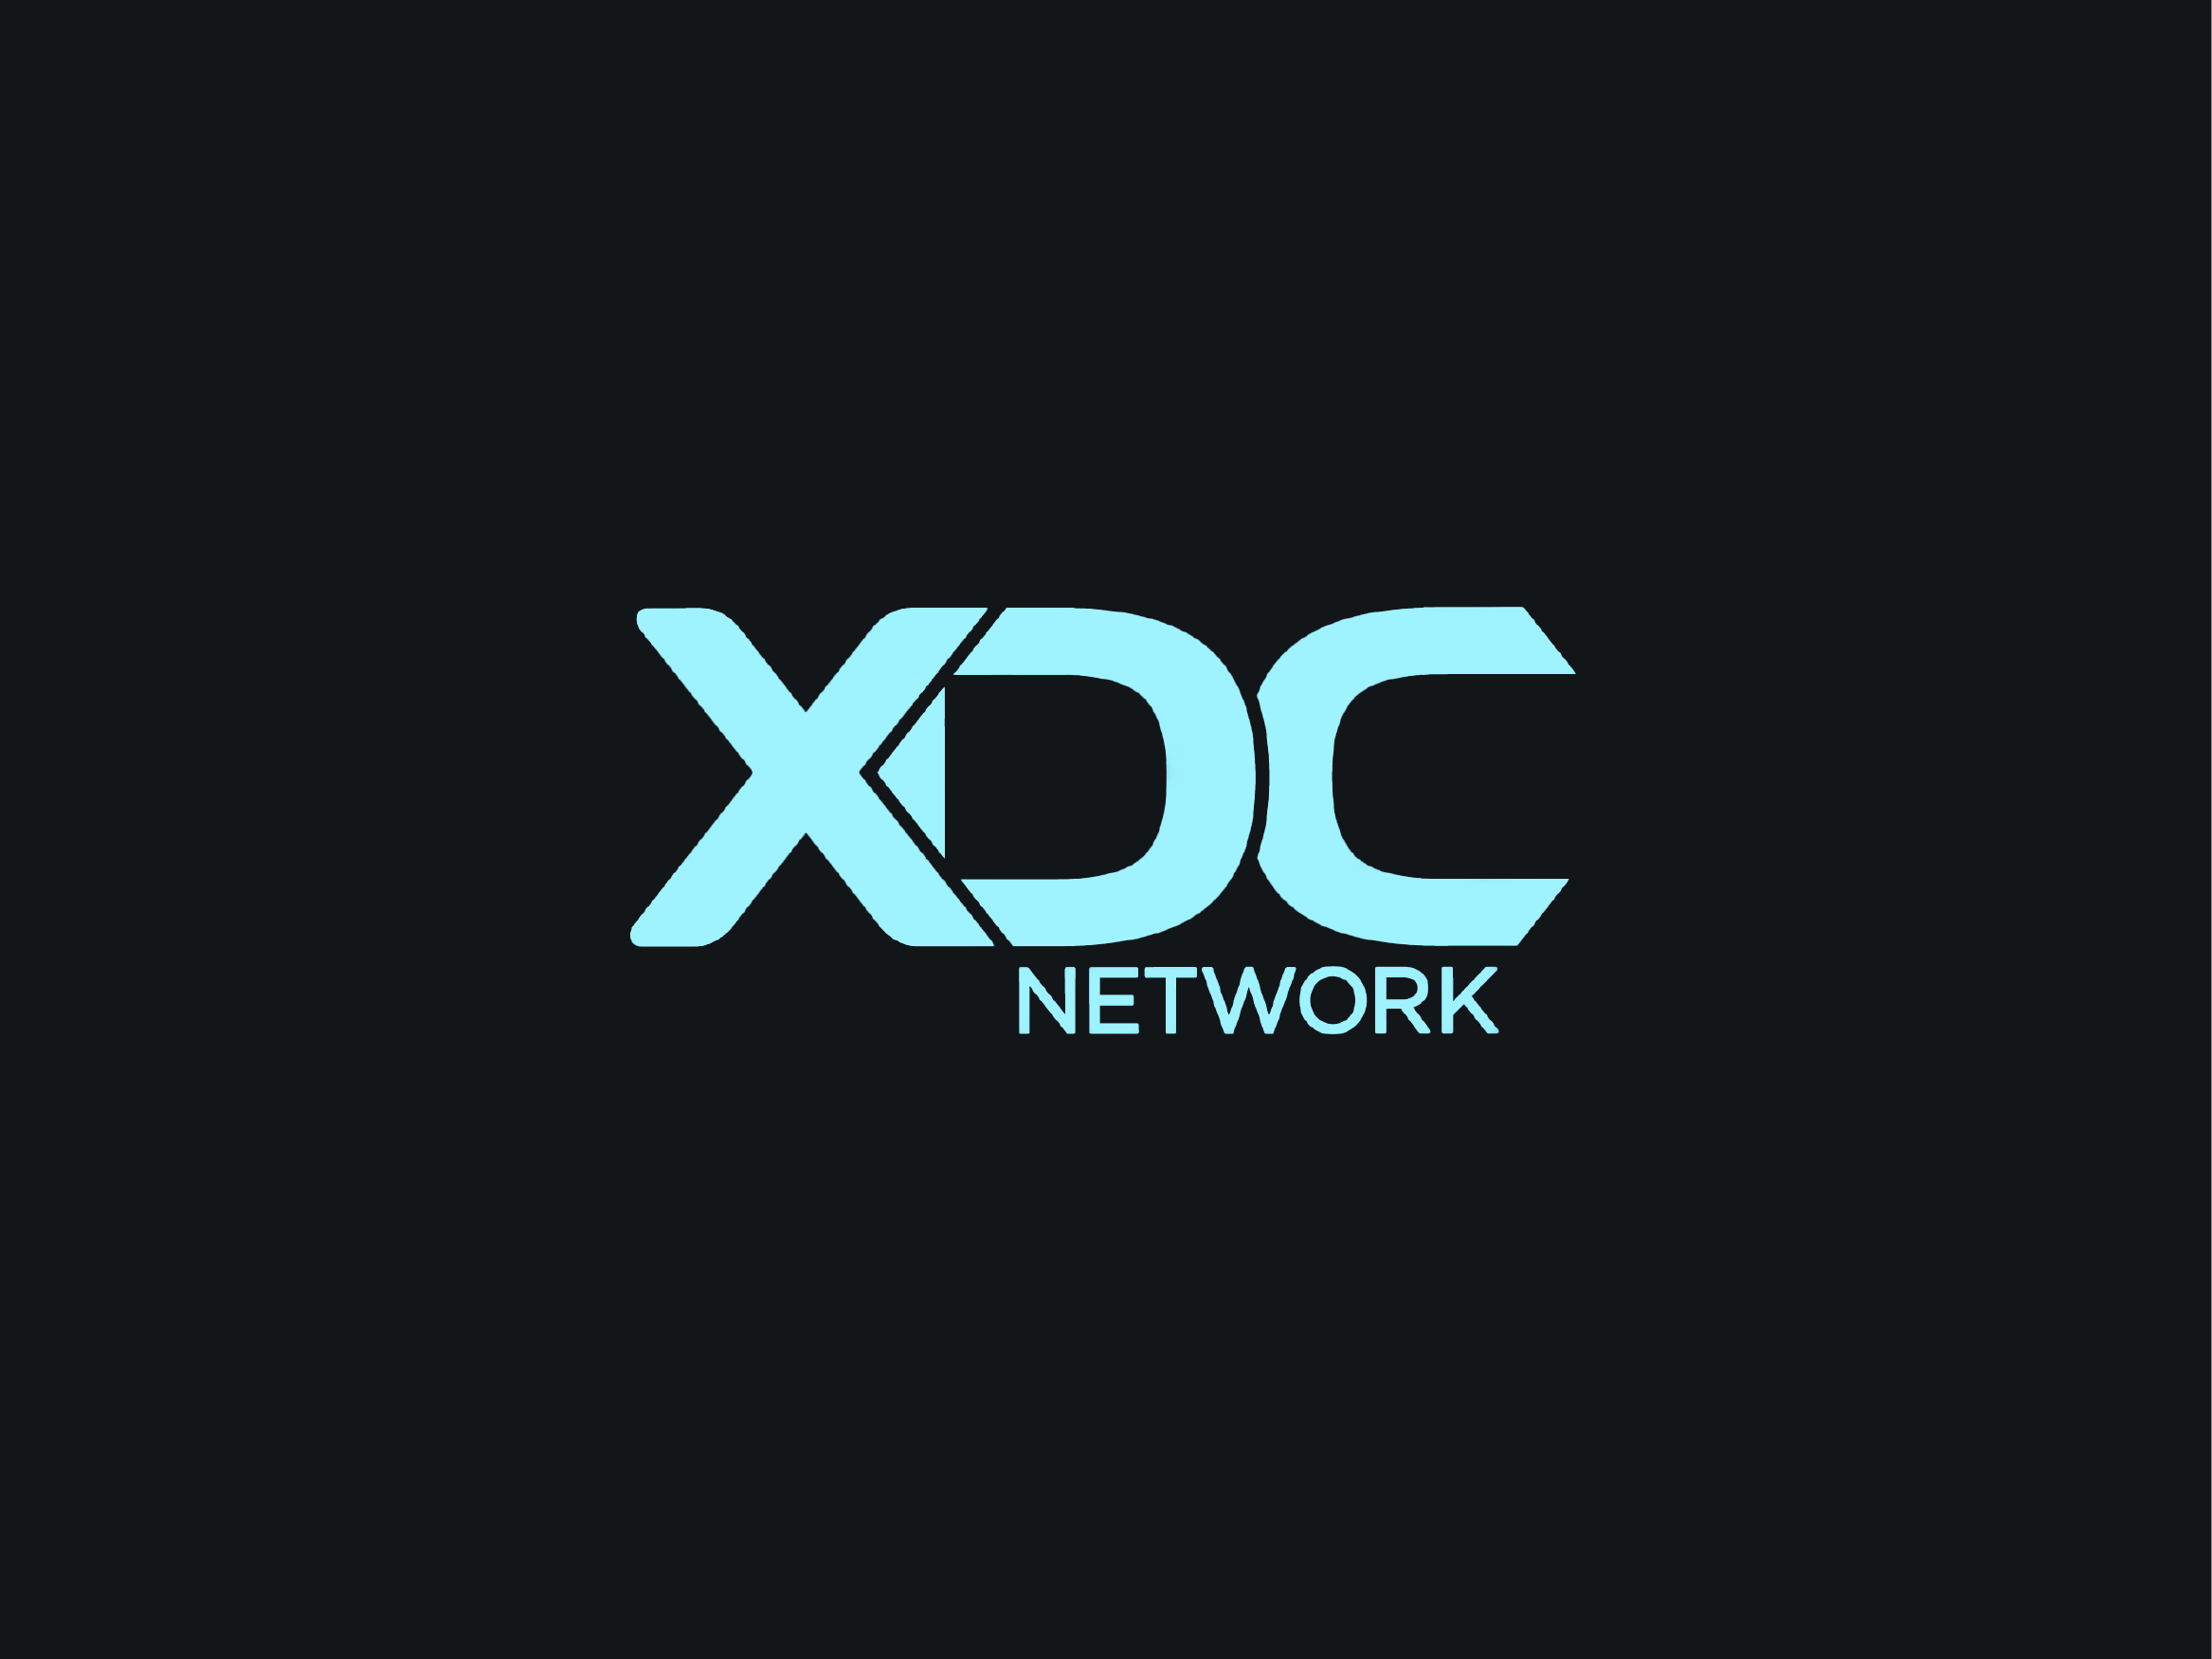 XDC Network Color Logo